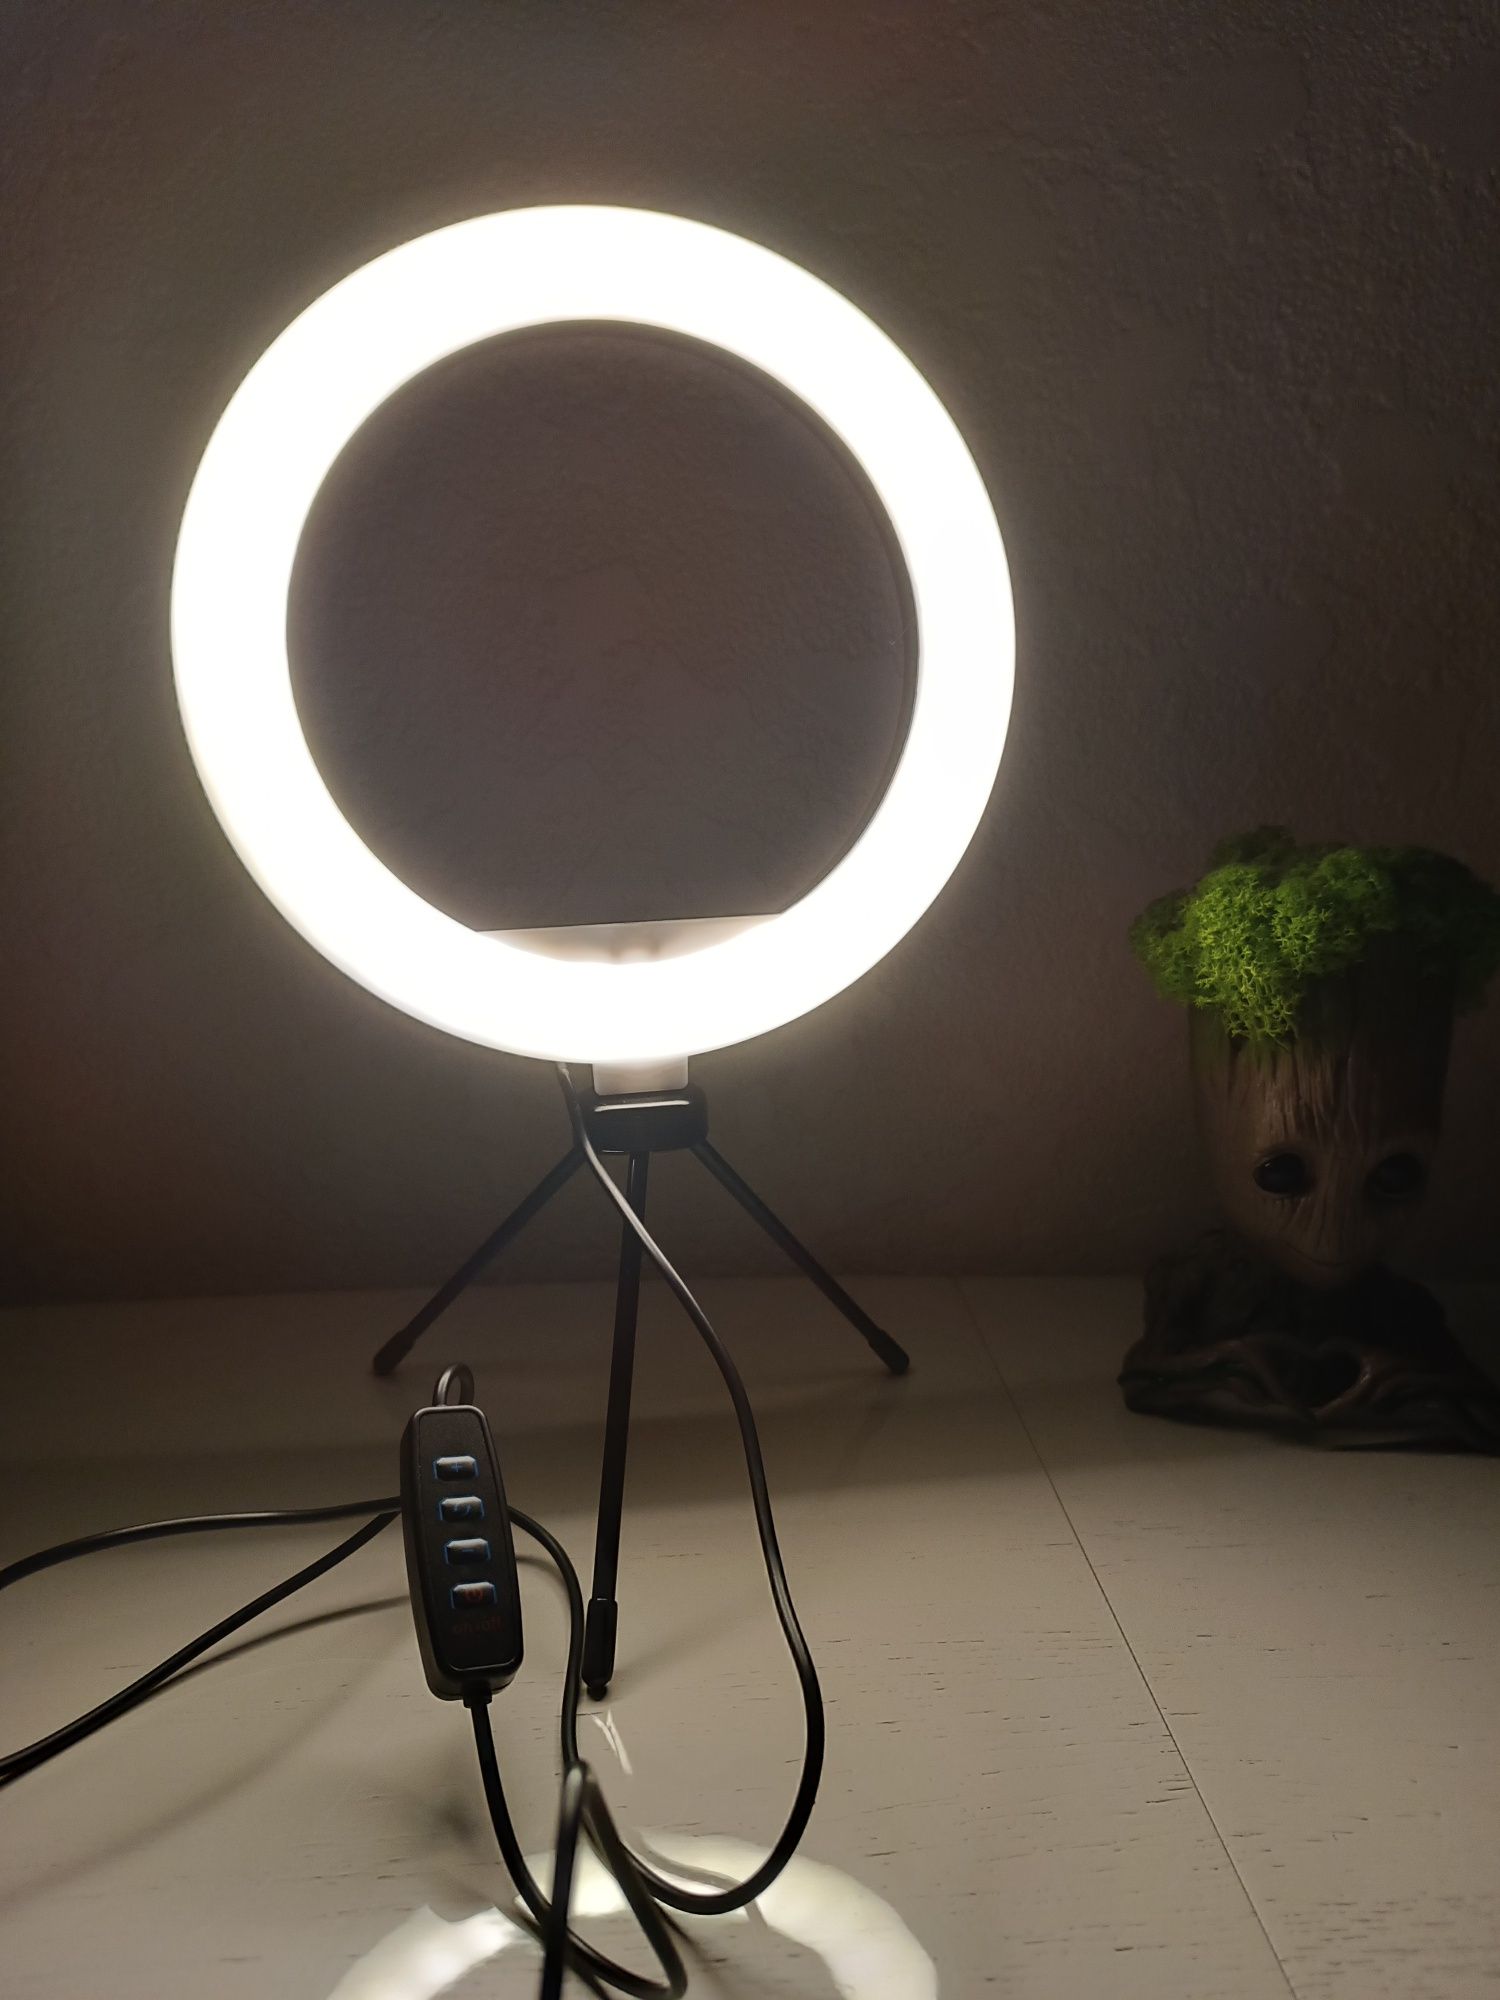 Кільцева usb лампа для блогерів на тринозі, допоможе при блекауті!